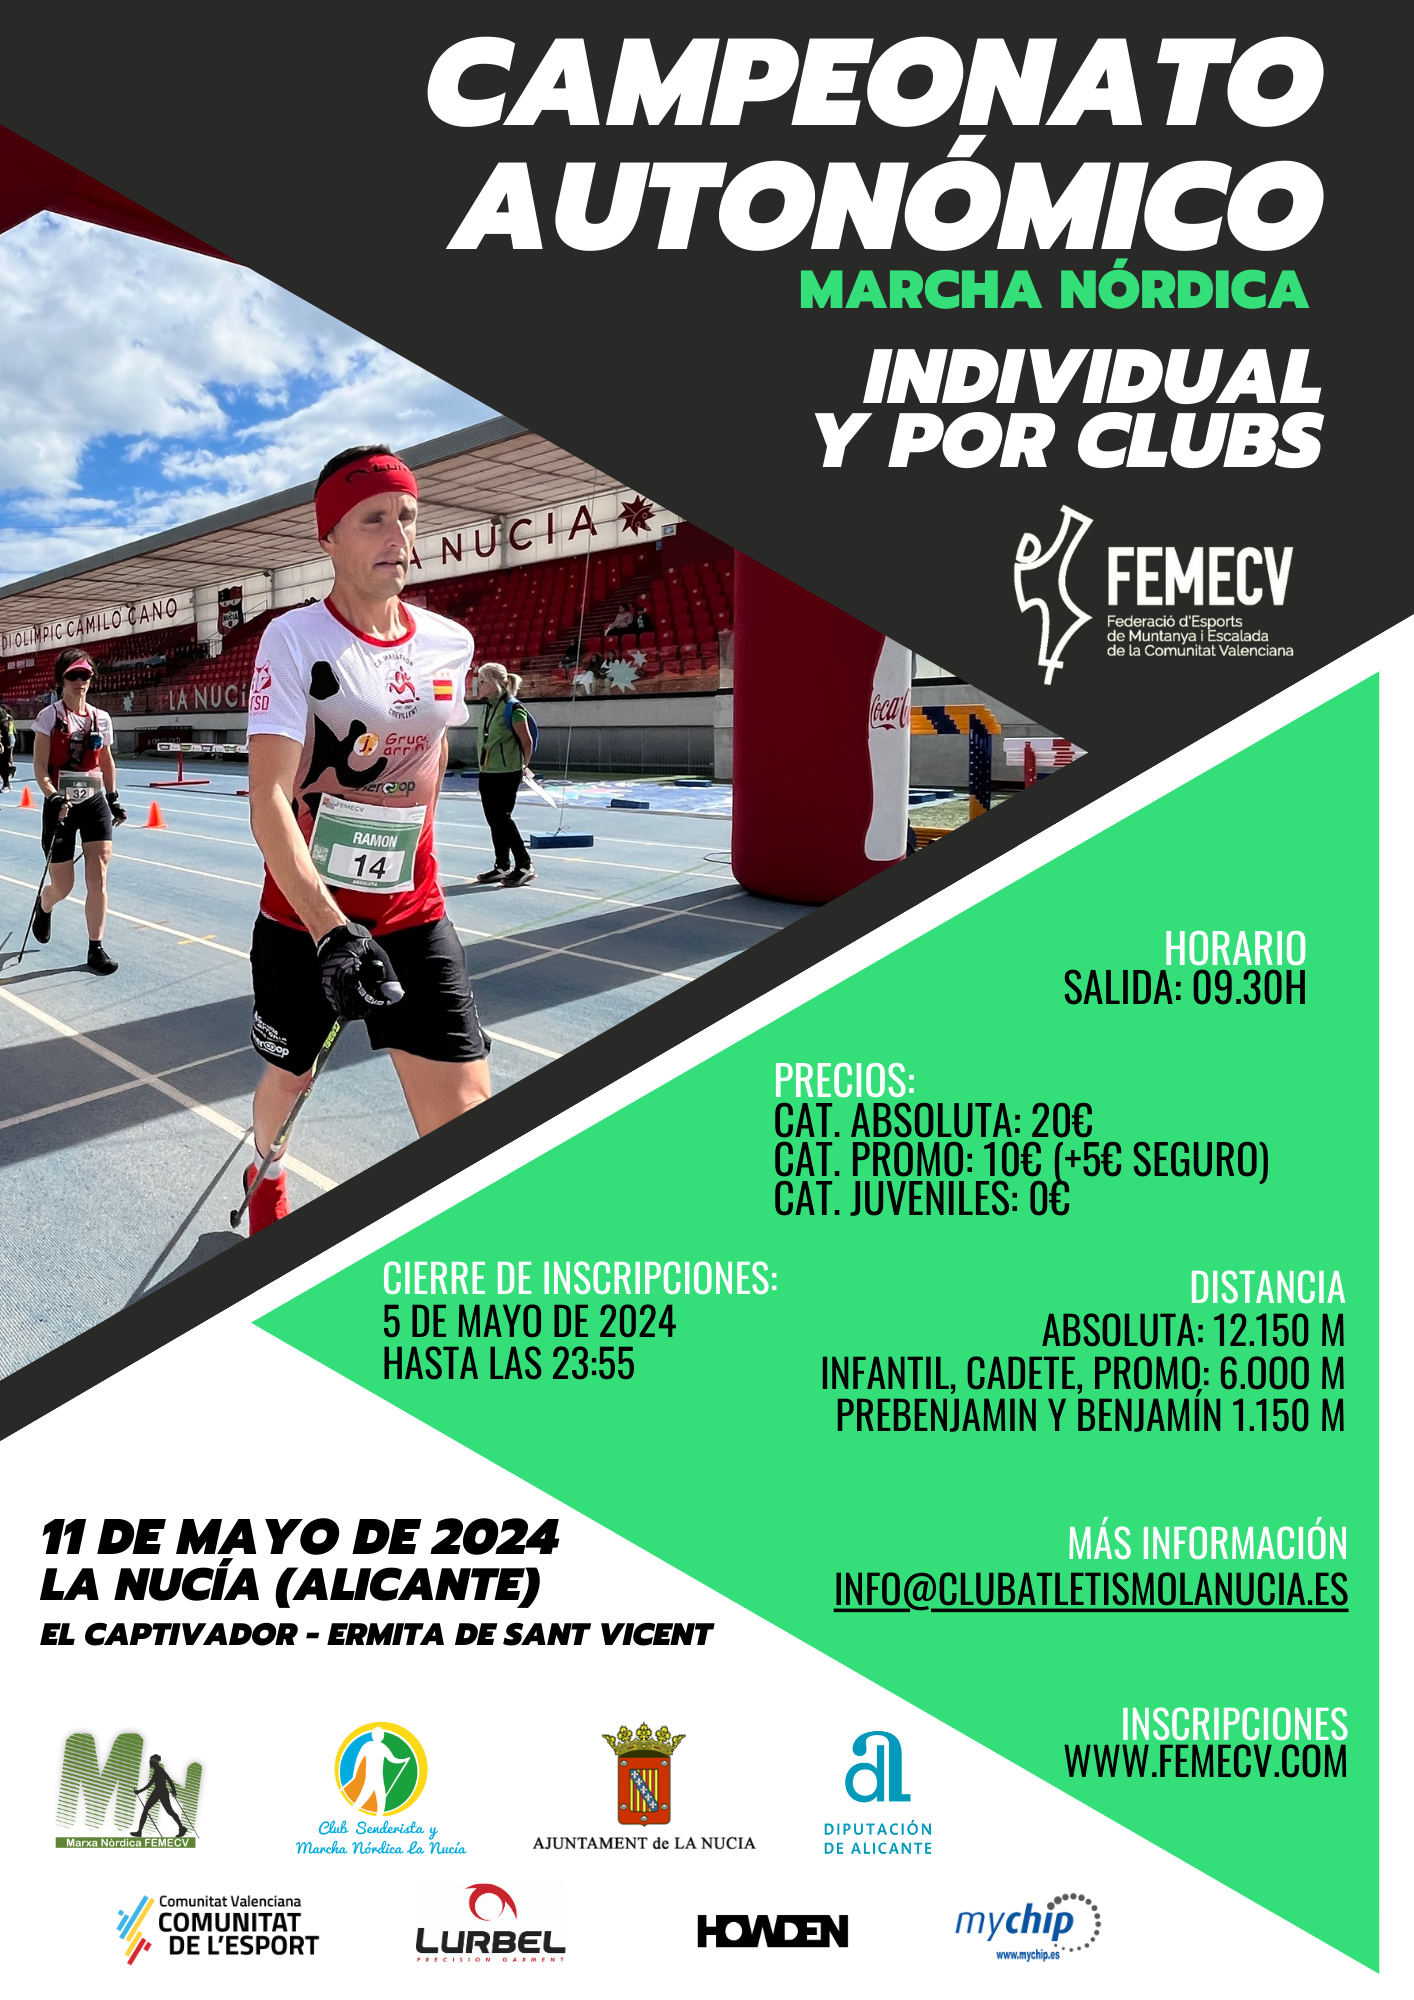 Campeonato Autonómico Individual  y por Clubs de Marcha Nórdica, La nucia, FEMECV 24